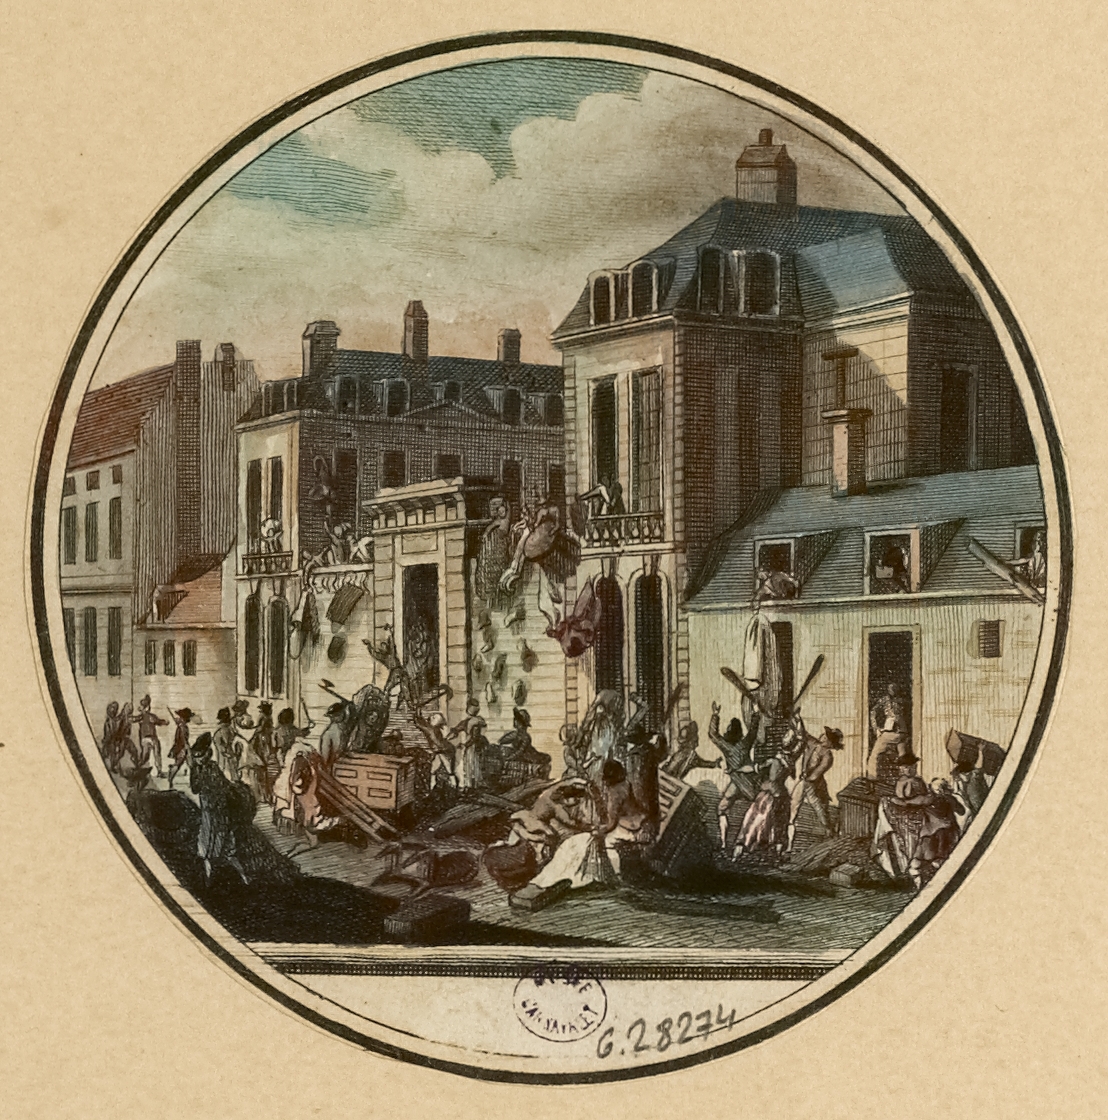 Pillage de
l’Hôtel de Castries, Eau-forte
coloriée, Philippe
Joseph Maillart, graveur, Lorent ou
Laurent, Jean-François, dessinateur 1795-1798